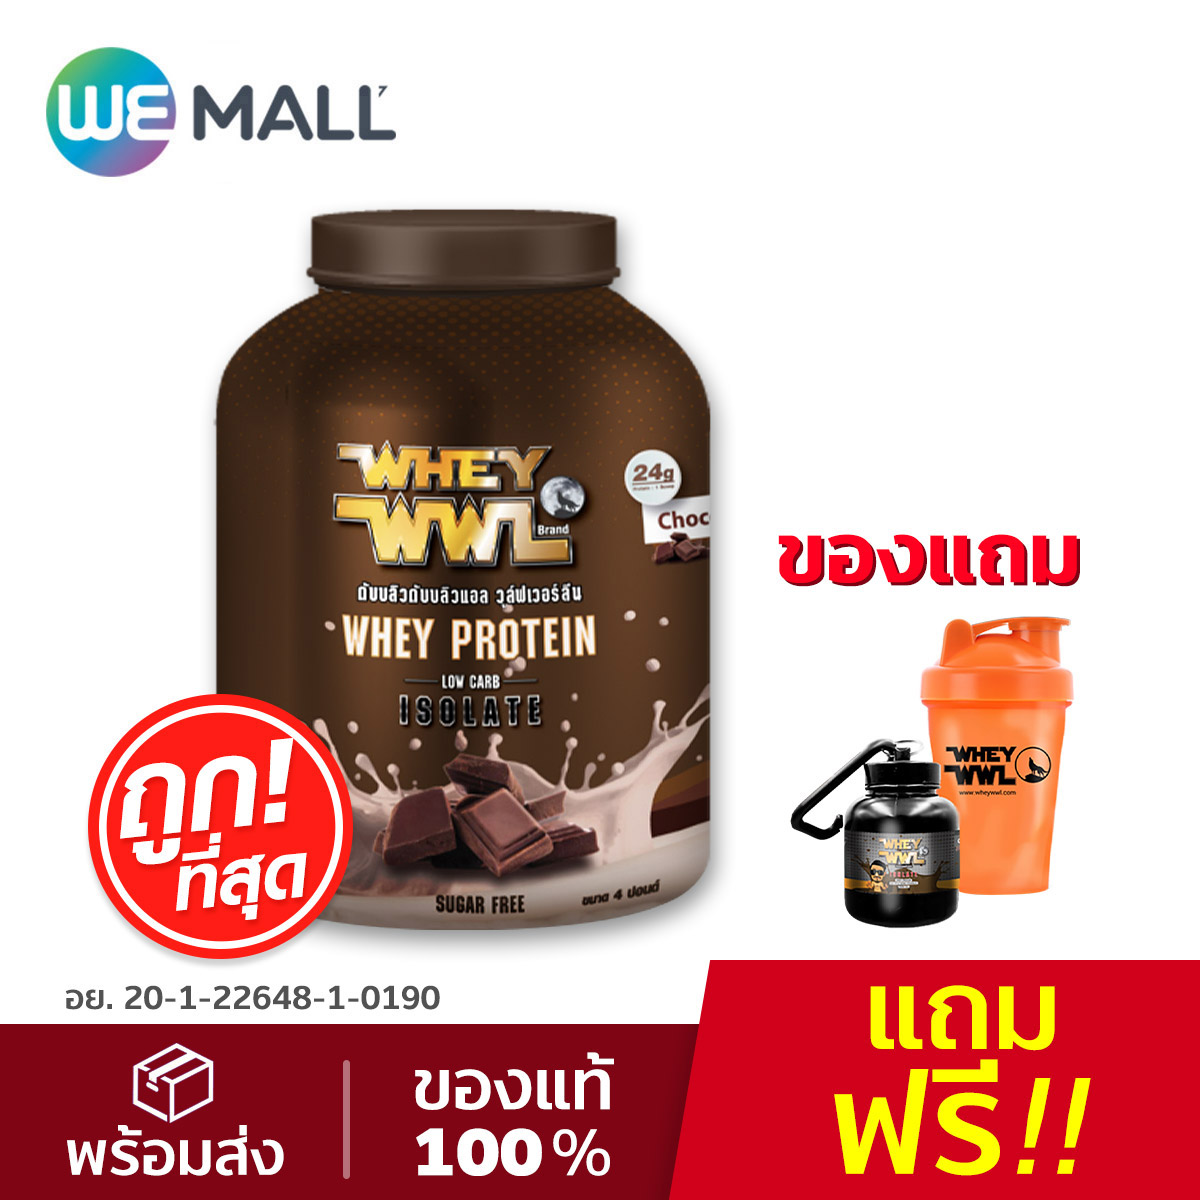 WHEYWWL เวย์โปรตีนไอโซเลท ขนาด 4 ปอนด์ รสช็อกโกแลต (แถมฟรี แก้ว shaker และกระปุกแบ่งเวย์) [WeMall]